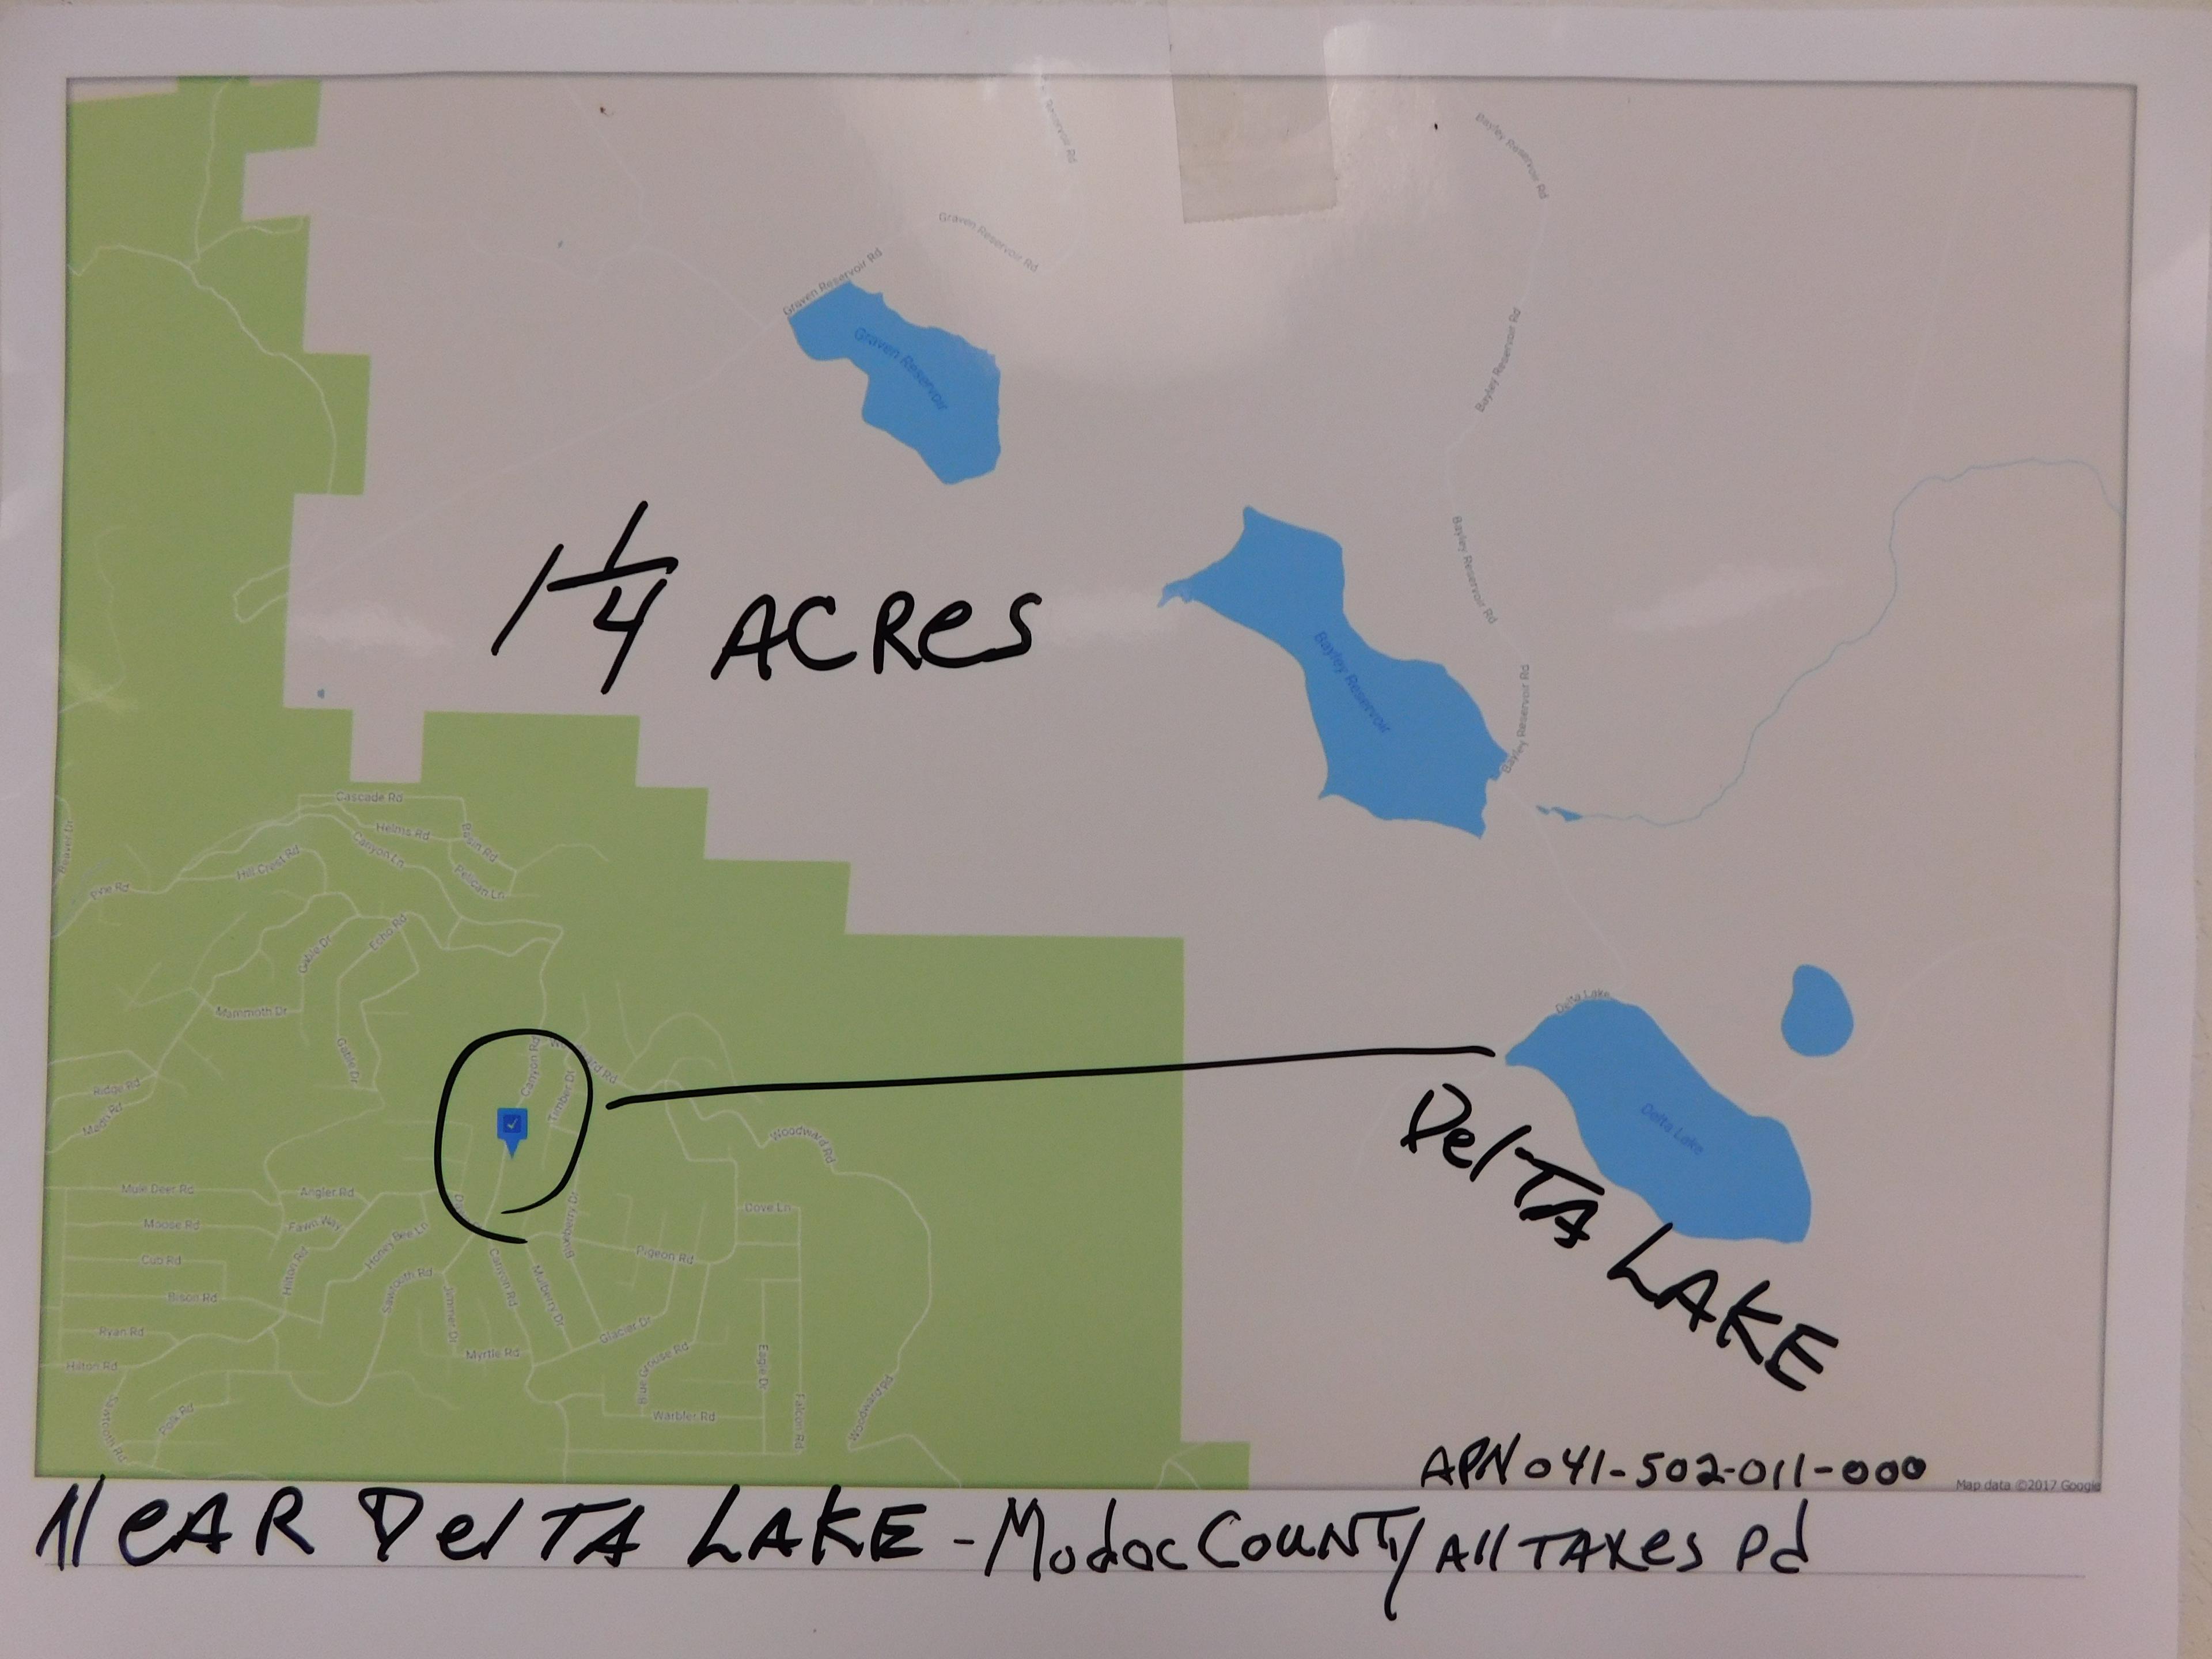 LOT# 5 -1 1/4 ACRES NEAR DELTA LAKE,MODOC COUNTY,CA